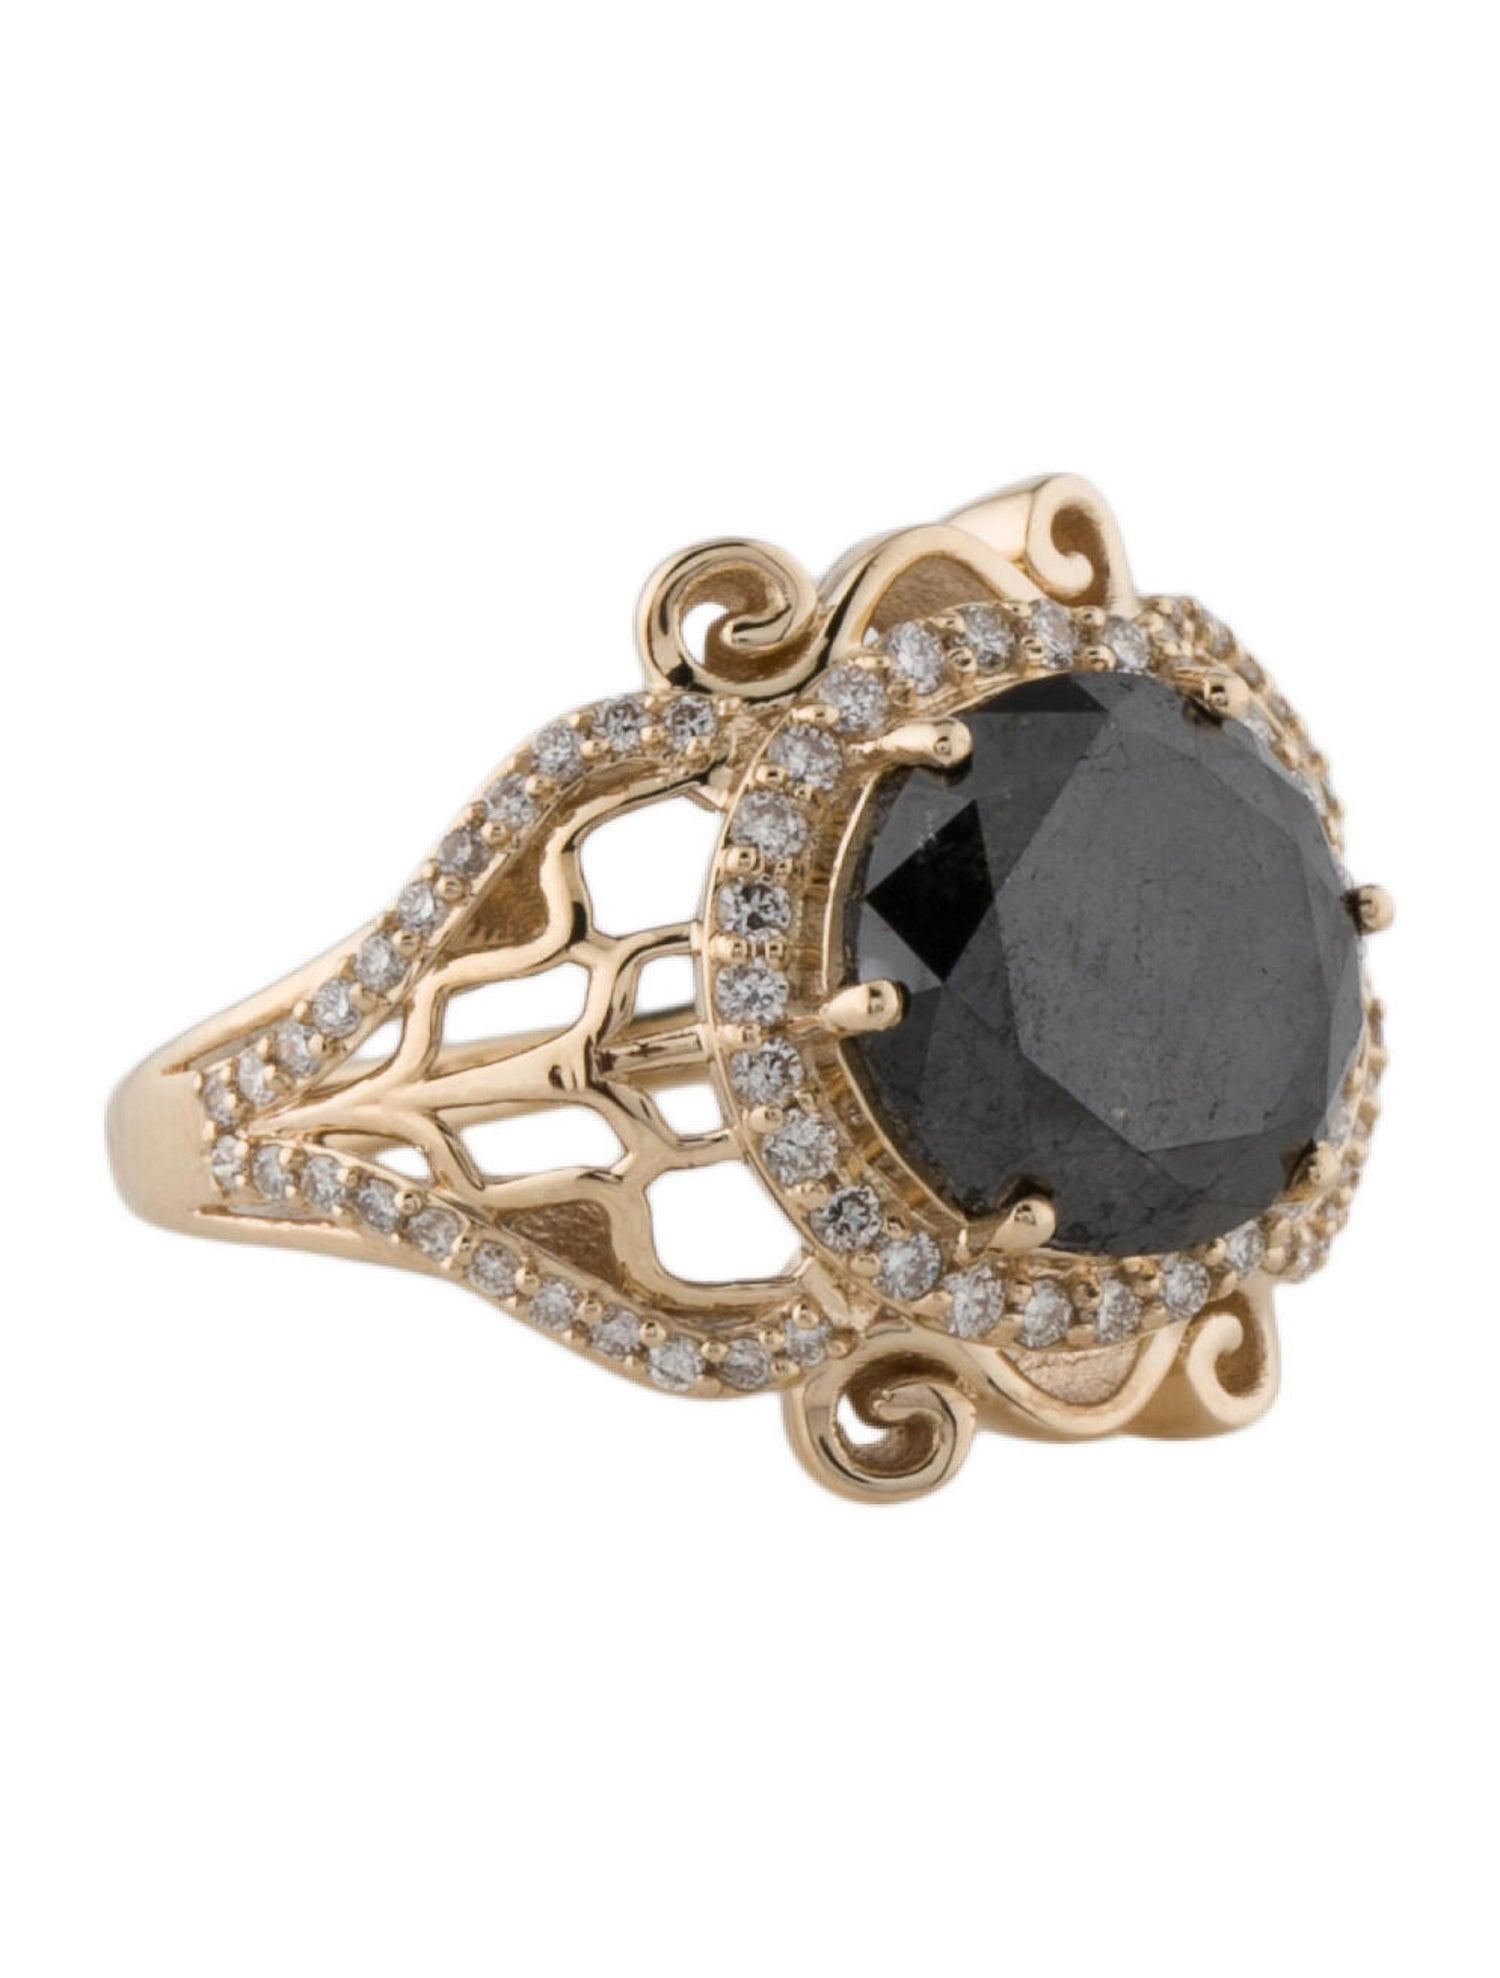 Beleben Sie Ihren Stil mit dem Magma Blaze Black Diamond and Diamond Ring von Jeweltique. Dieses exquisite Stück ist ein Zeugnis der feurigen Energie von Vulkanausbrüchen, eingefangen in atemberaubenden schwarzen und weißen Diamanten. Der aus 14